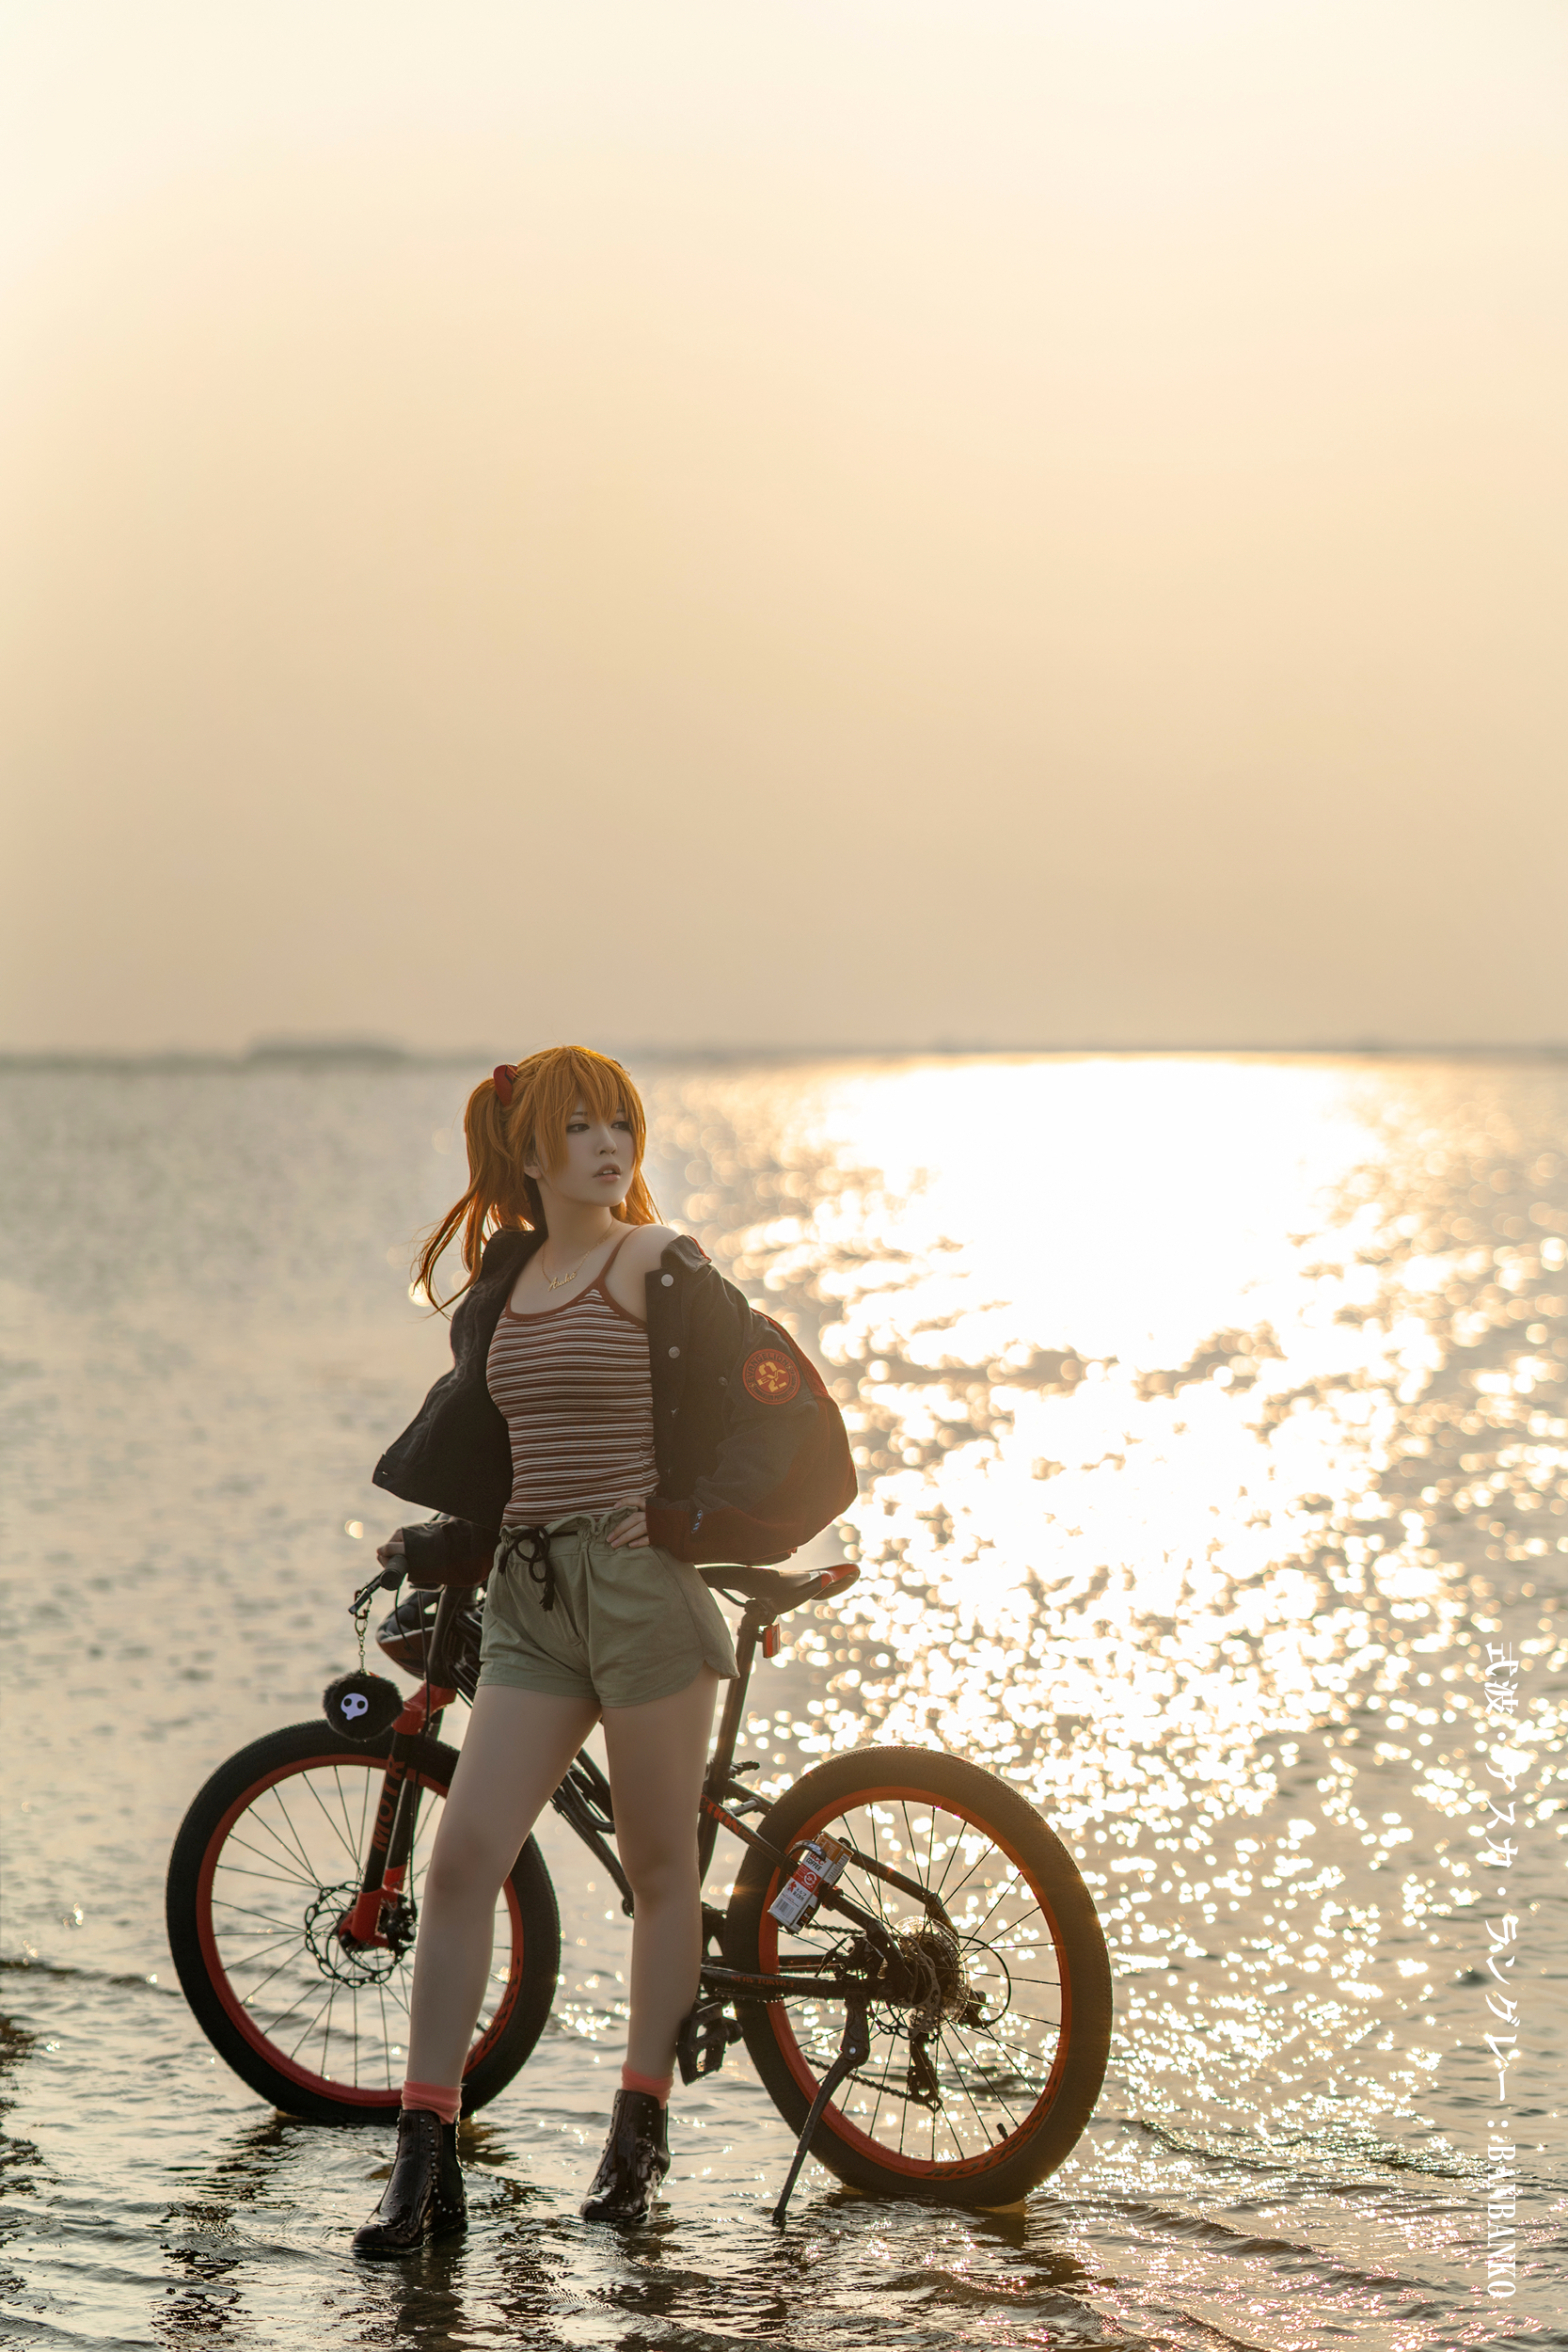 画像,Asuka Langley Soryu 🌊- 02 #Asuka #新世纪エヴァンゲリオン #EVA #EVANGELION https://t.co/sPeJ…